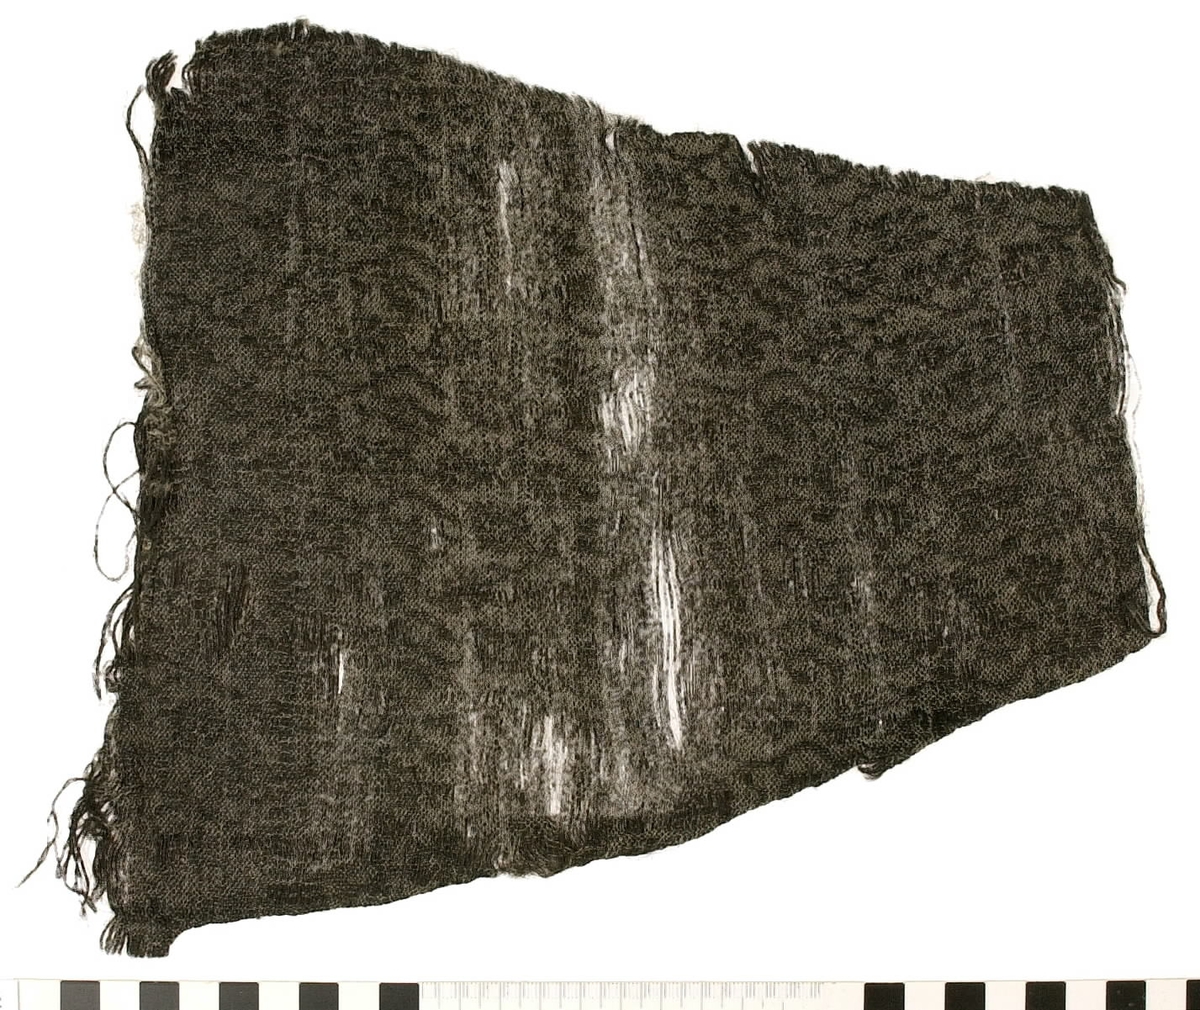 Textil.
8 textilfragment uppdelat på fyndnummer 14647a-e.
Fnr 14647a består av ett fragment av ull vävt i tuskaft.
Fnr 14647b består av två fragment av ull vävda i tuskaft.
Fnr 14647c består av en del av en fåll av silke.
Fnr 14647d består av tre fragment av ull. Det ena är ett vävt band och de andra fragmenten är två halvor av textil som tillsammans bildar en liten rund plätt.
Fnr 14647e är en tygbit med blommönster. "Materialet är svart ull och ljust silke. Det är en ovanlig typ av tuskaftsvävnad med mönsterinslag som ligger obundet mellan tuskaftsinslagen. Mönsterinslagen bildar ett blommönster inom varje rapport som har typisk 1600-talskaraktär. Tillskärning och fållar finns längs alla fyra sidorna. Det är omöjligt att bestämma vad det ursprungligen har varit. Storlek och form anger att det bör ha tillhört något klädesplagg." Looström och Stapf, Tre tusen textilfragment, 1983, s. 29.
Fnr 14647 innehas också av en nål som hör till fyndet.